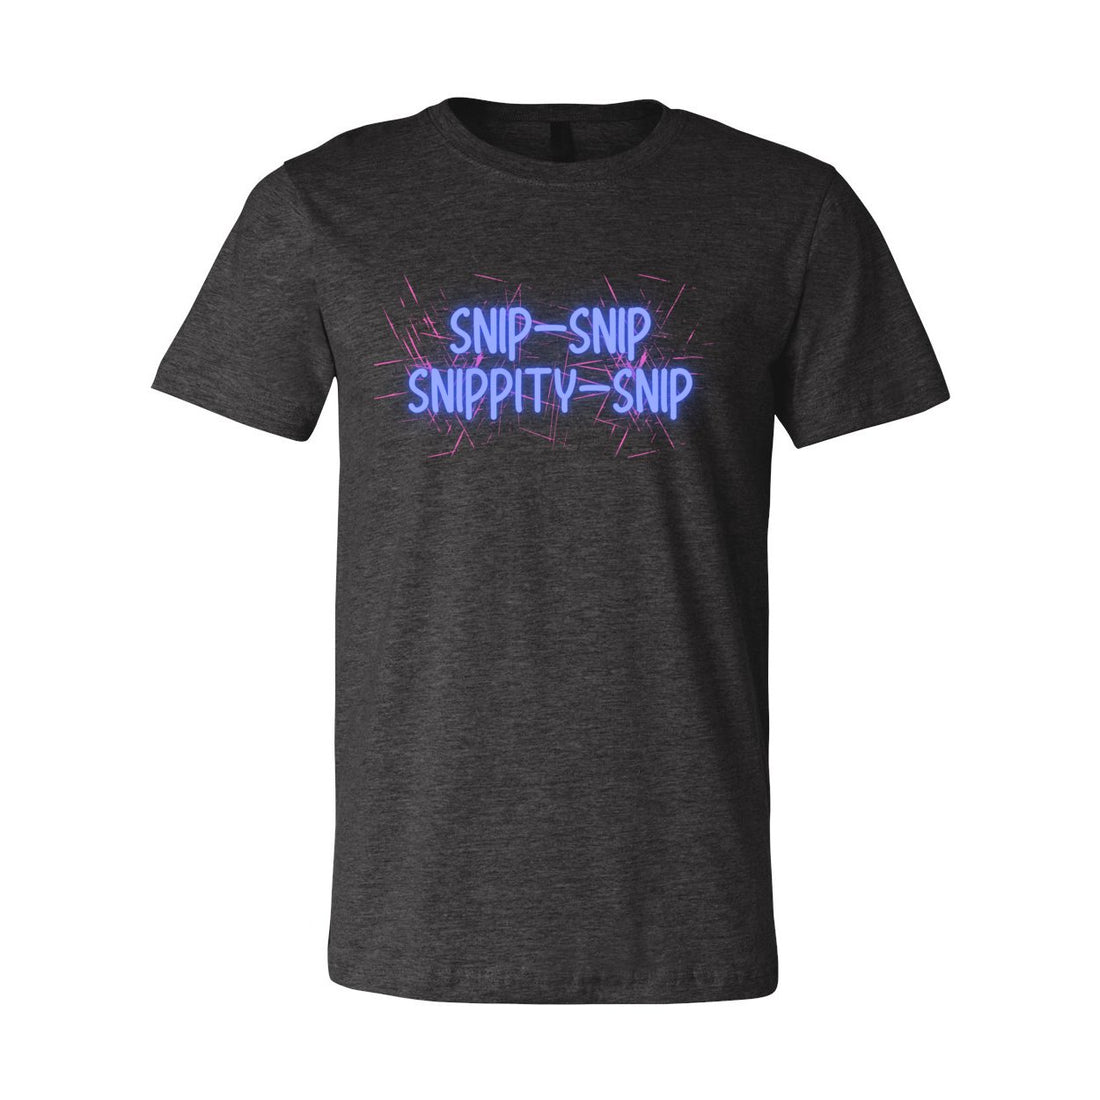 Snip Snip Jersey Tee - T-Shirts - Positively Sassy - Snip Snip Jersey Tee